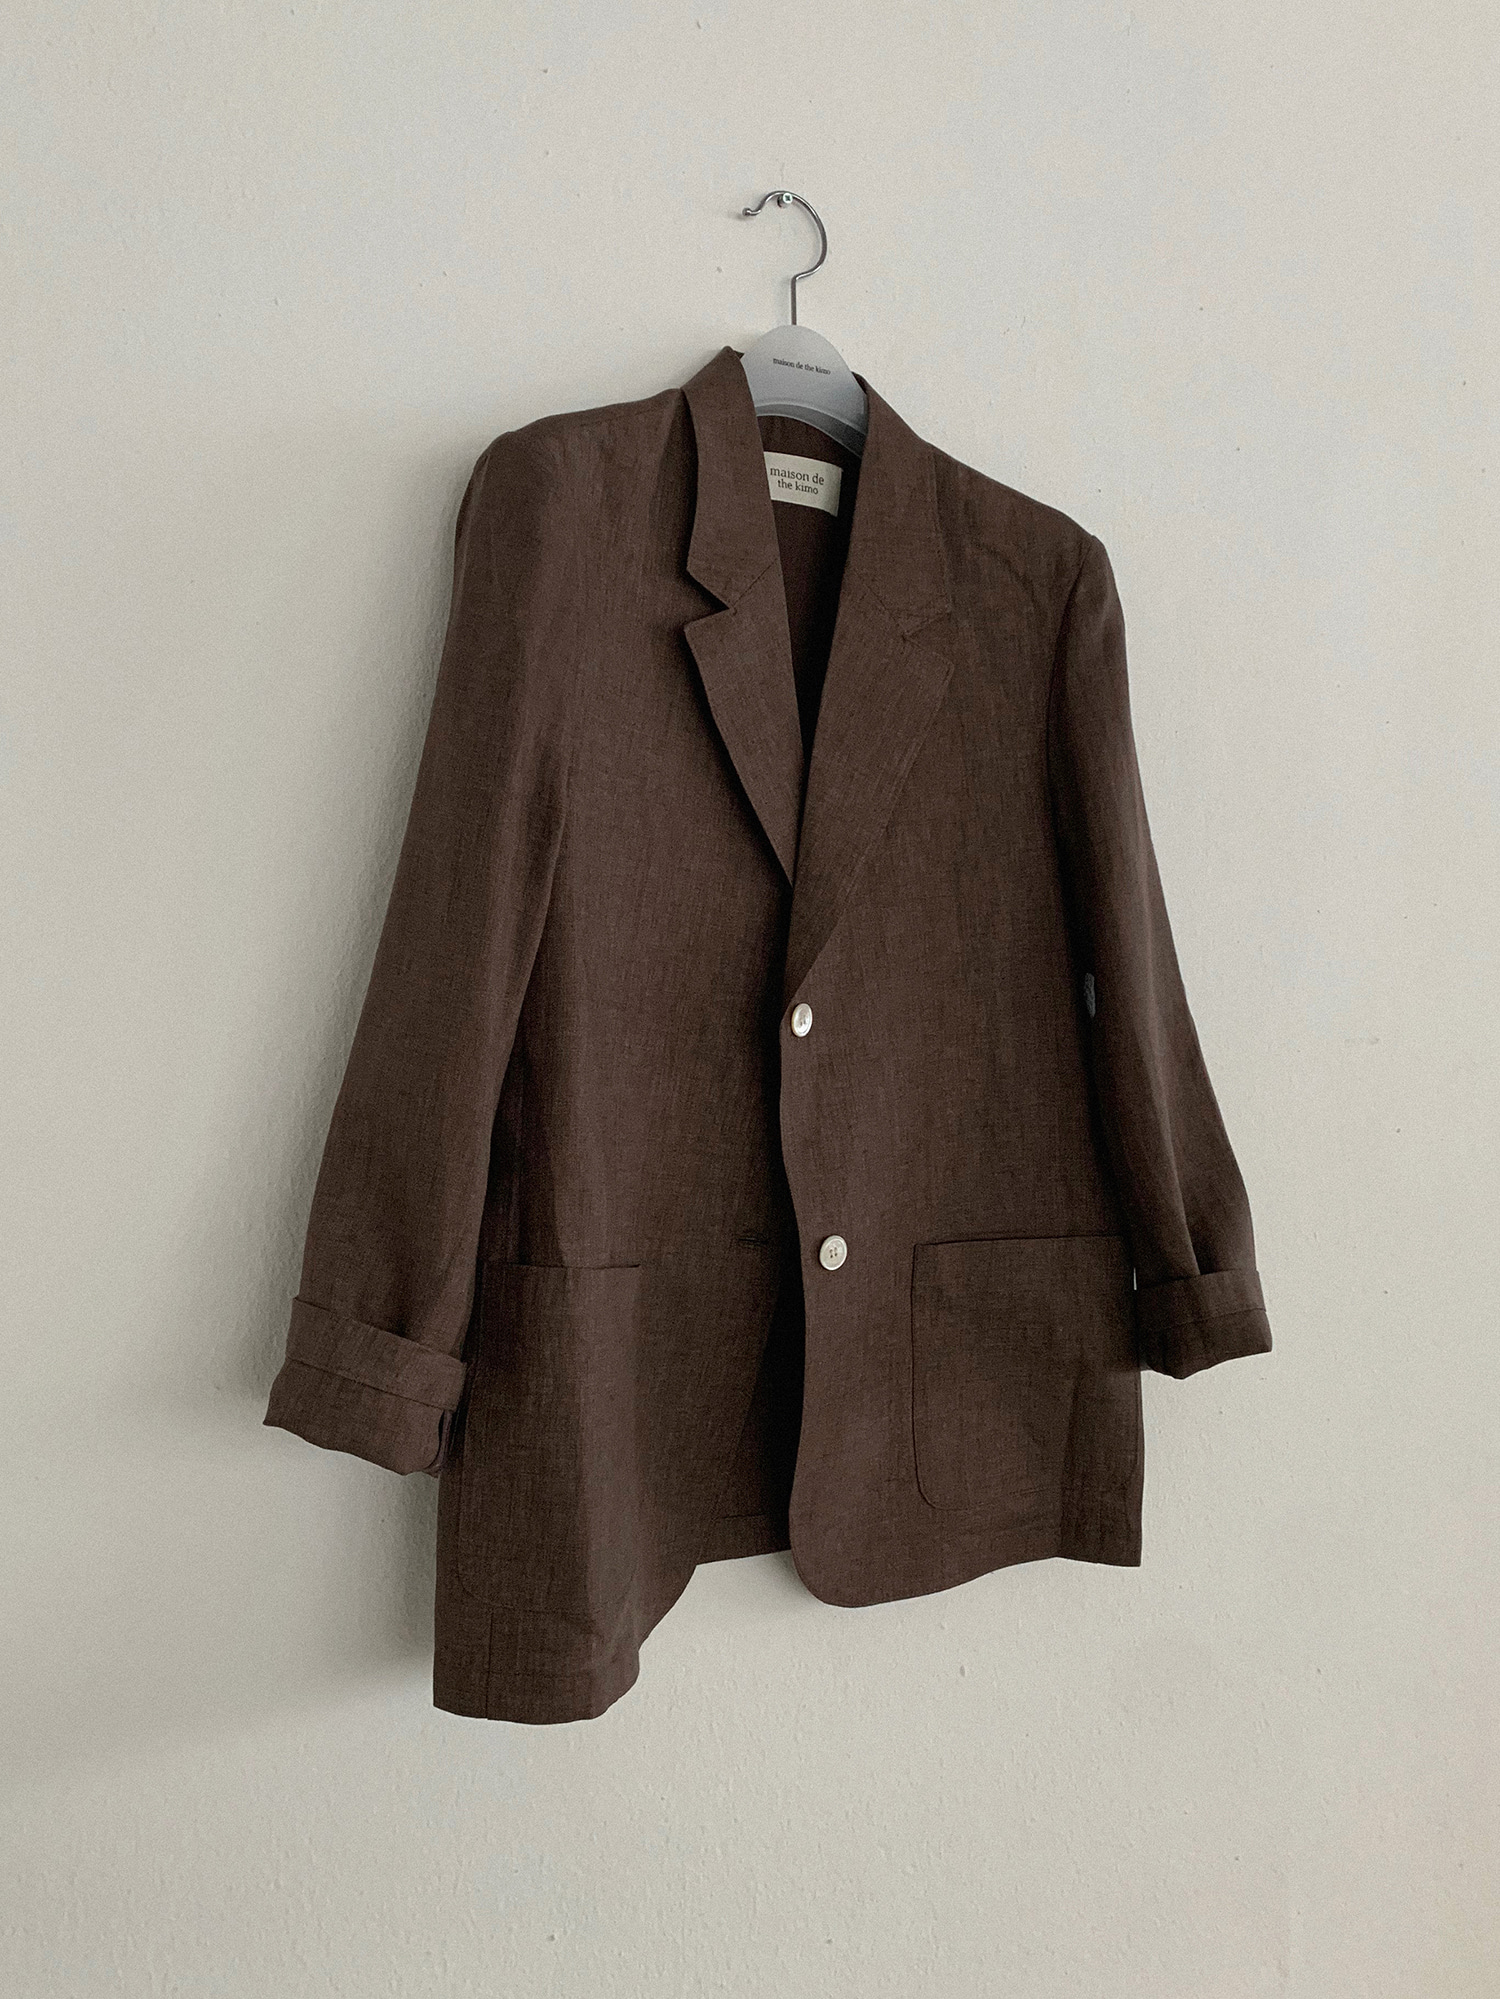 Rose linen jacket (brown)